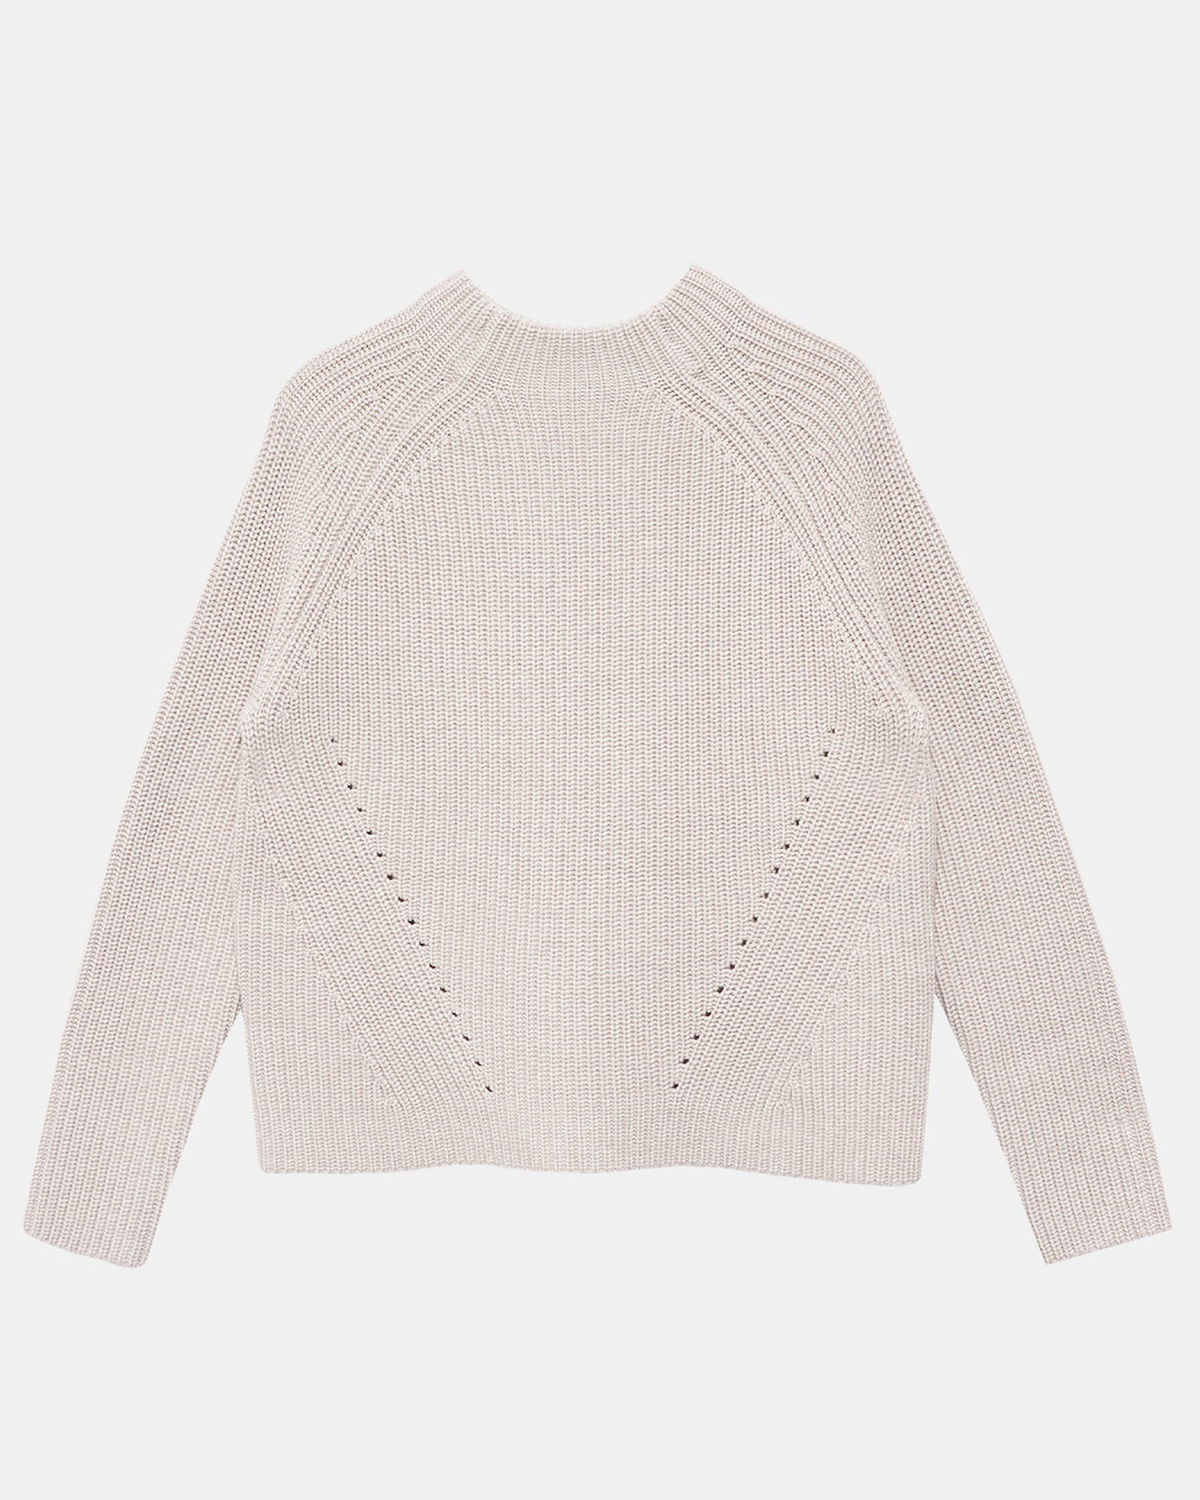 Daphne Wool Sweater in Oatmeal